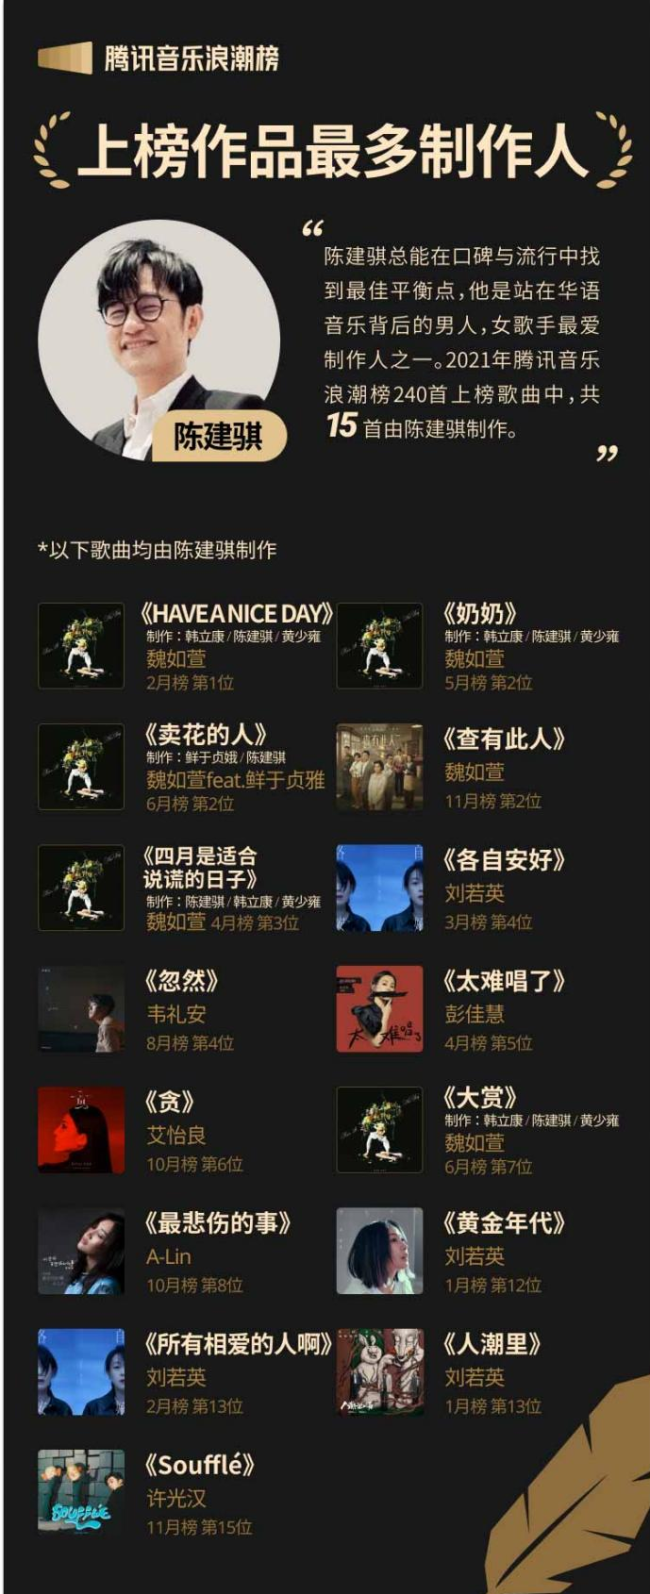 米乐m62021腾讯音乐榜年度盘点浪潮榜篇：见证华语乐坛专业与品质的新浪潮(图3)